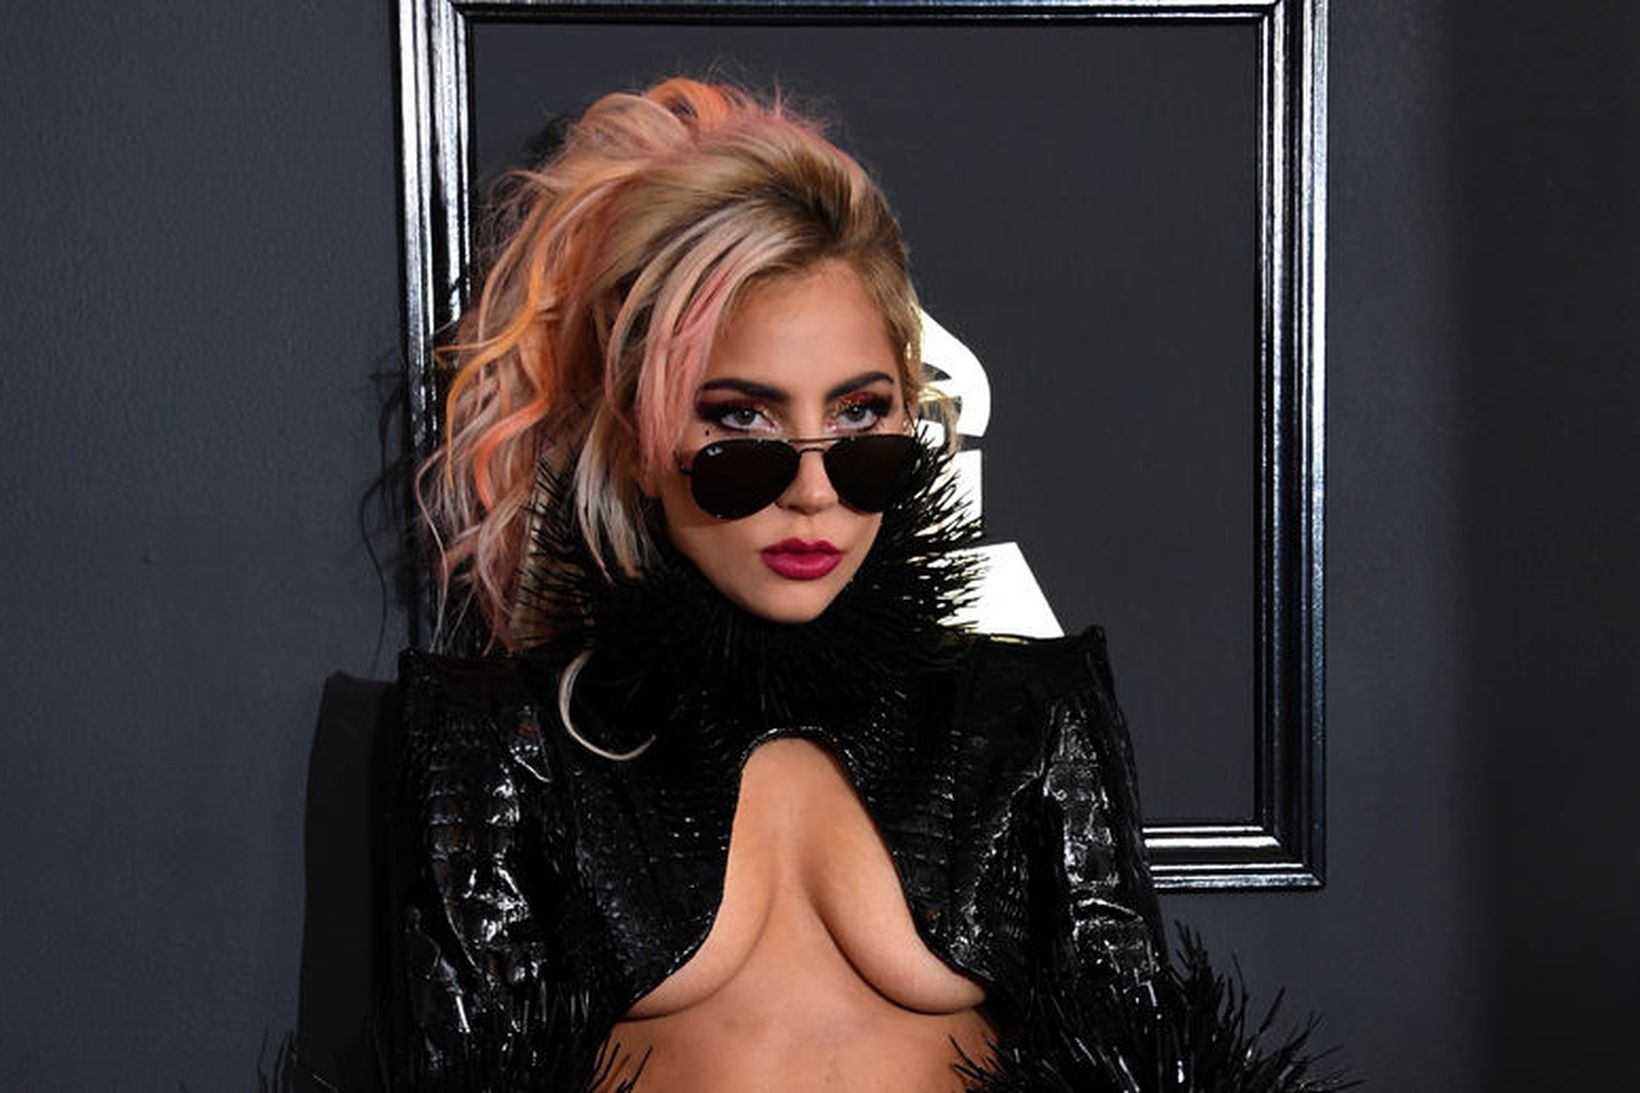 Lady Gaga fer sínar eigin leiðir í fatavali.